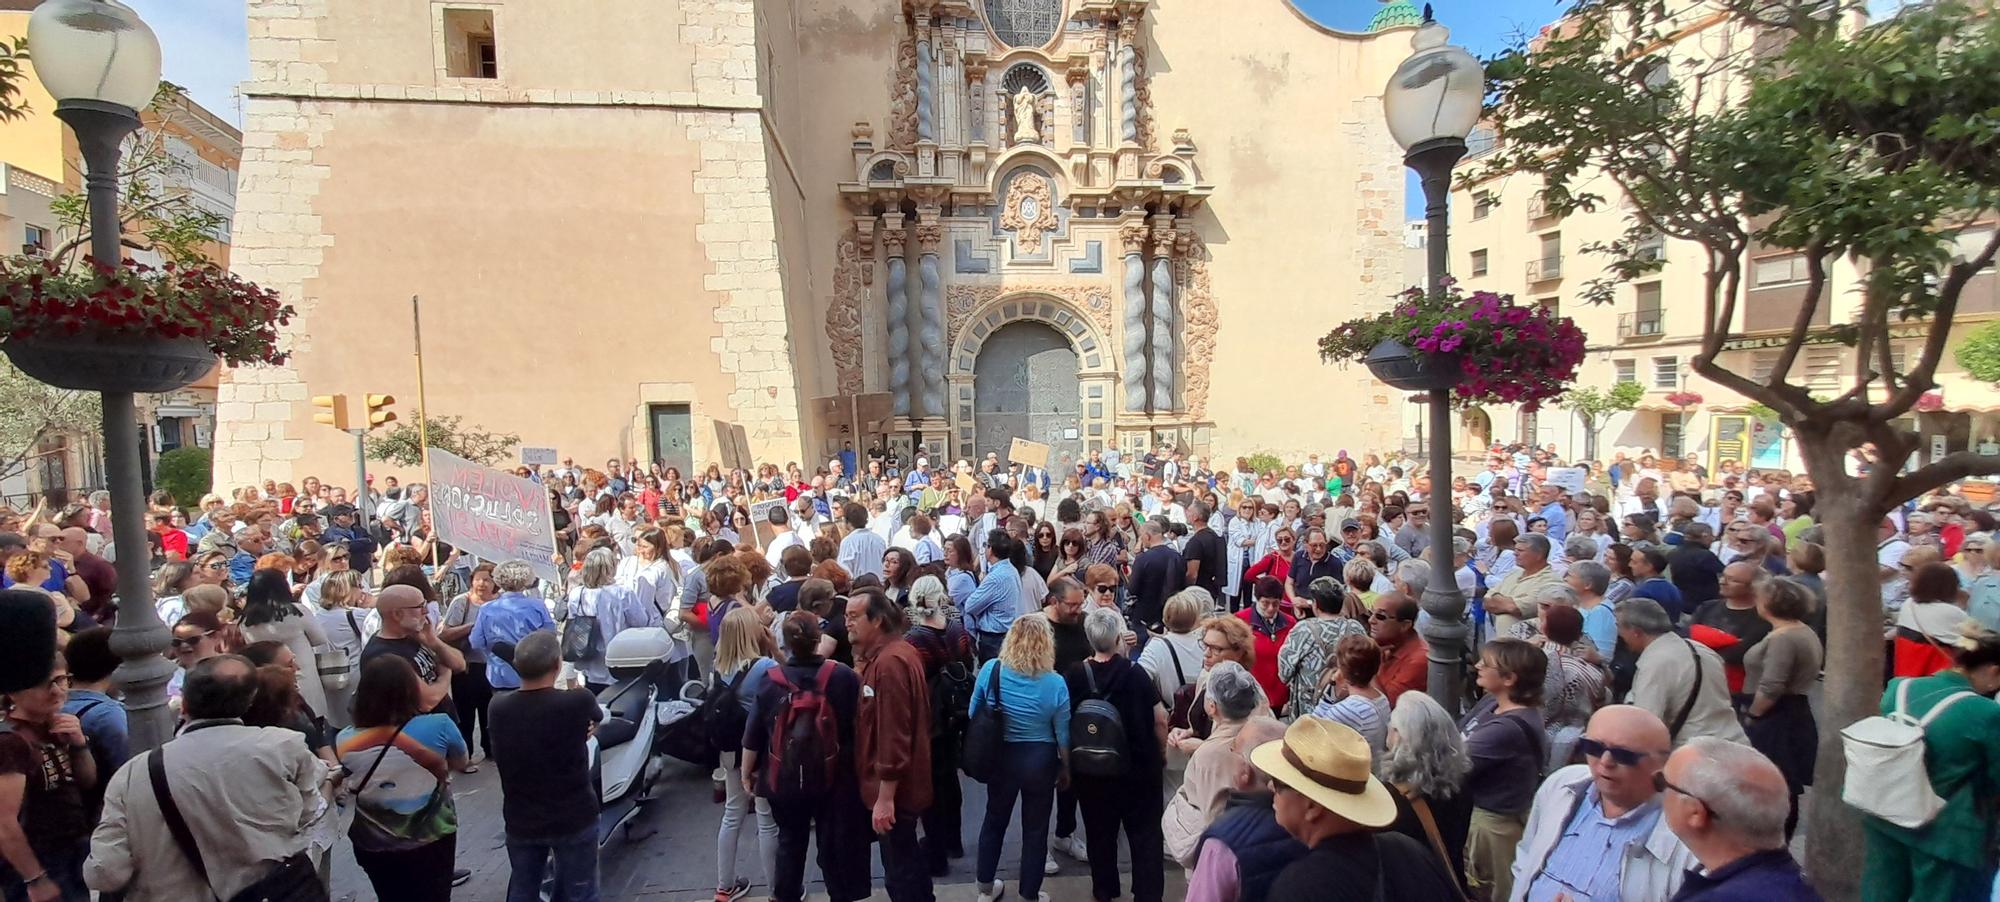 Fotos de la multitudinaria manifestación en Vinaròs para defender "una sanidad pública digna"